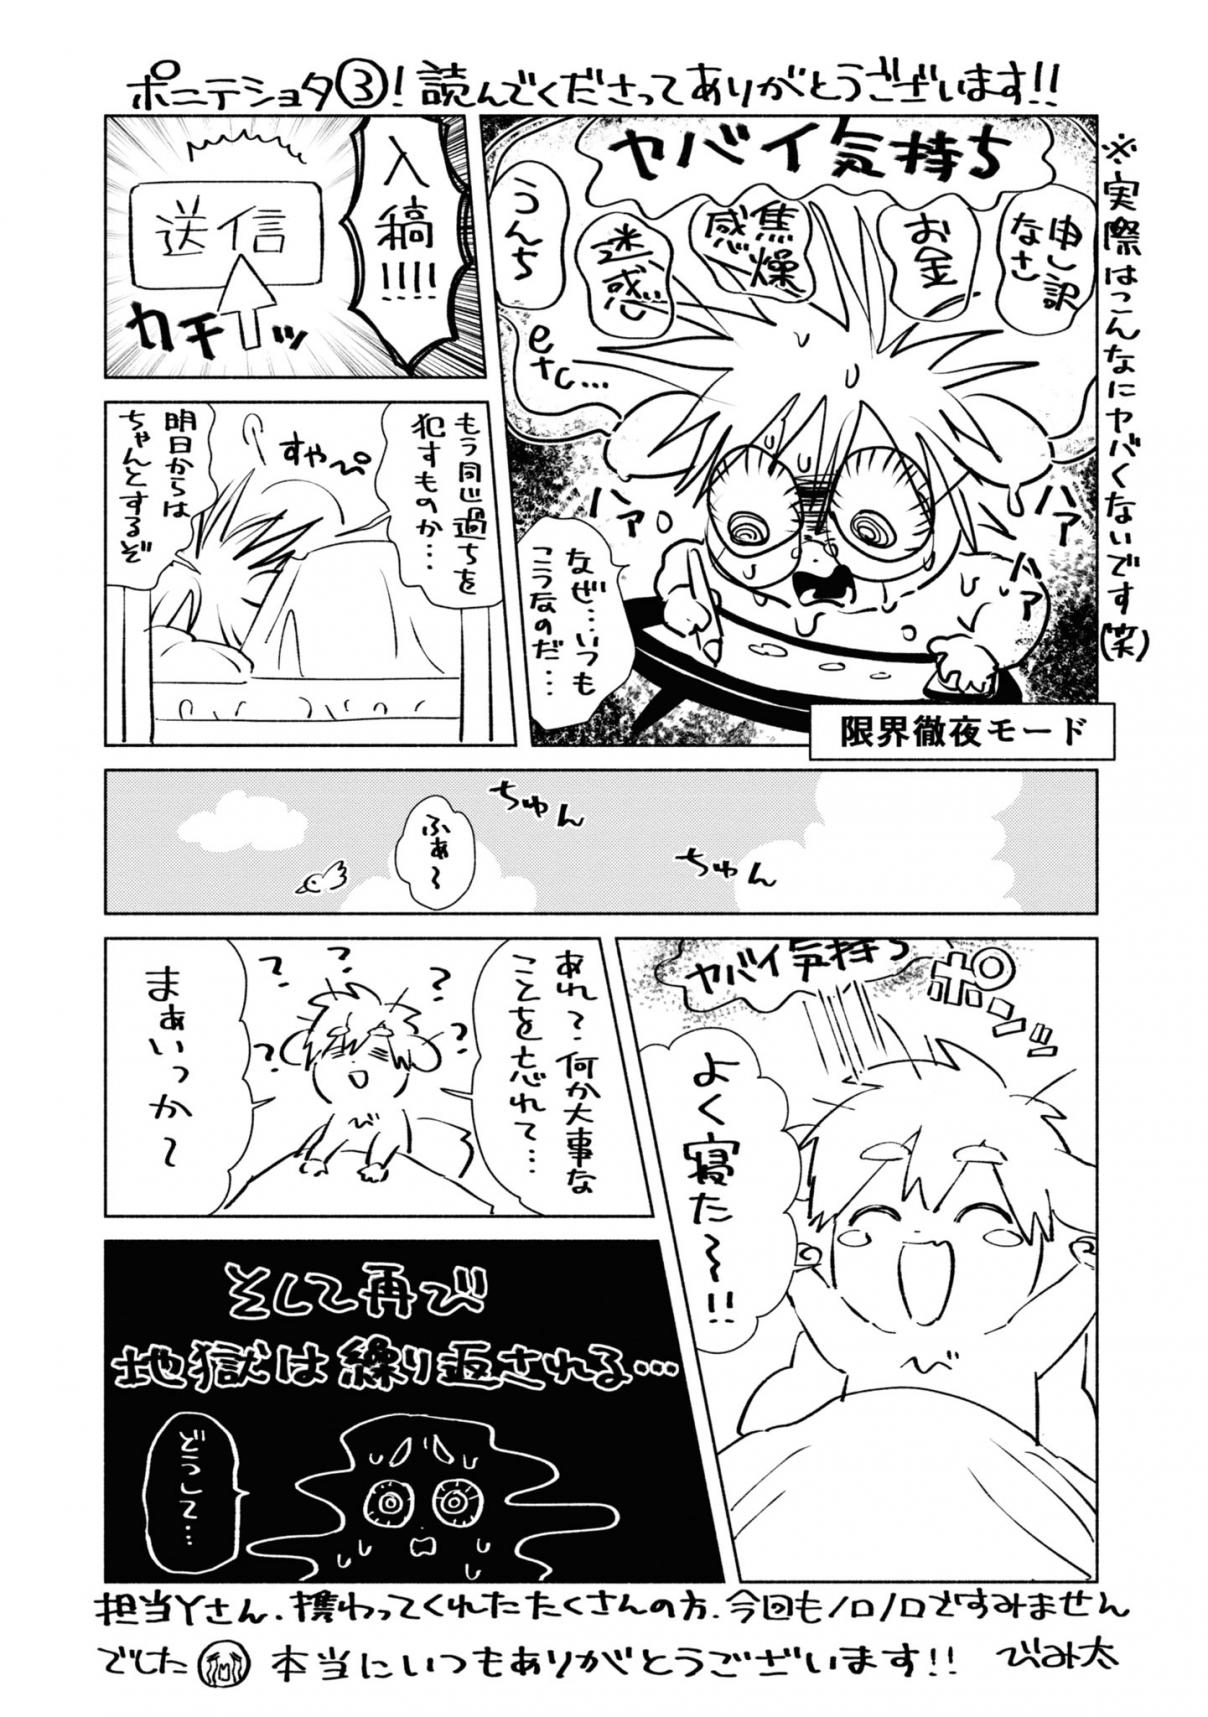 Inaka ni Kaeru to Yakeni Natsuita Kasshoku Ponytail Shota ga Iru Vol. 3 Ch. 30.5